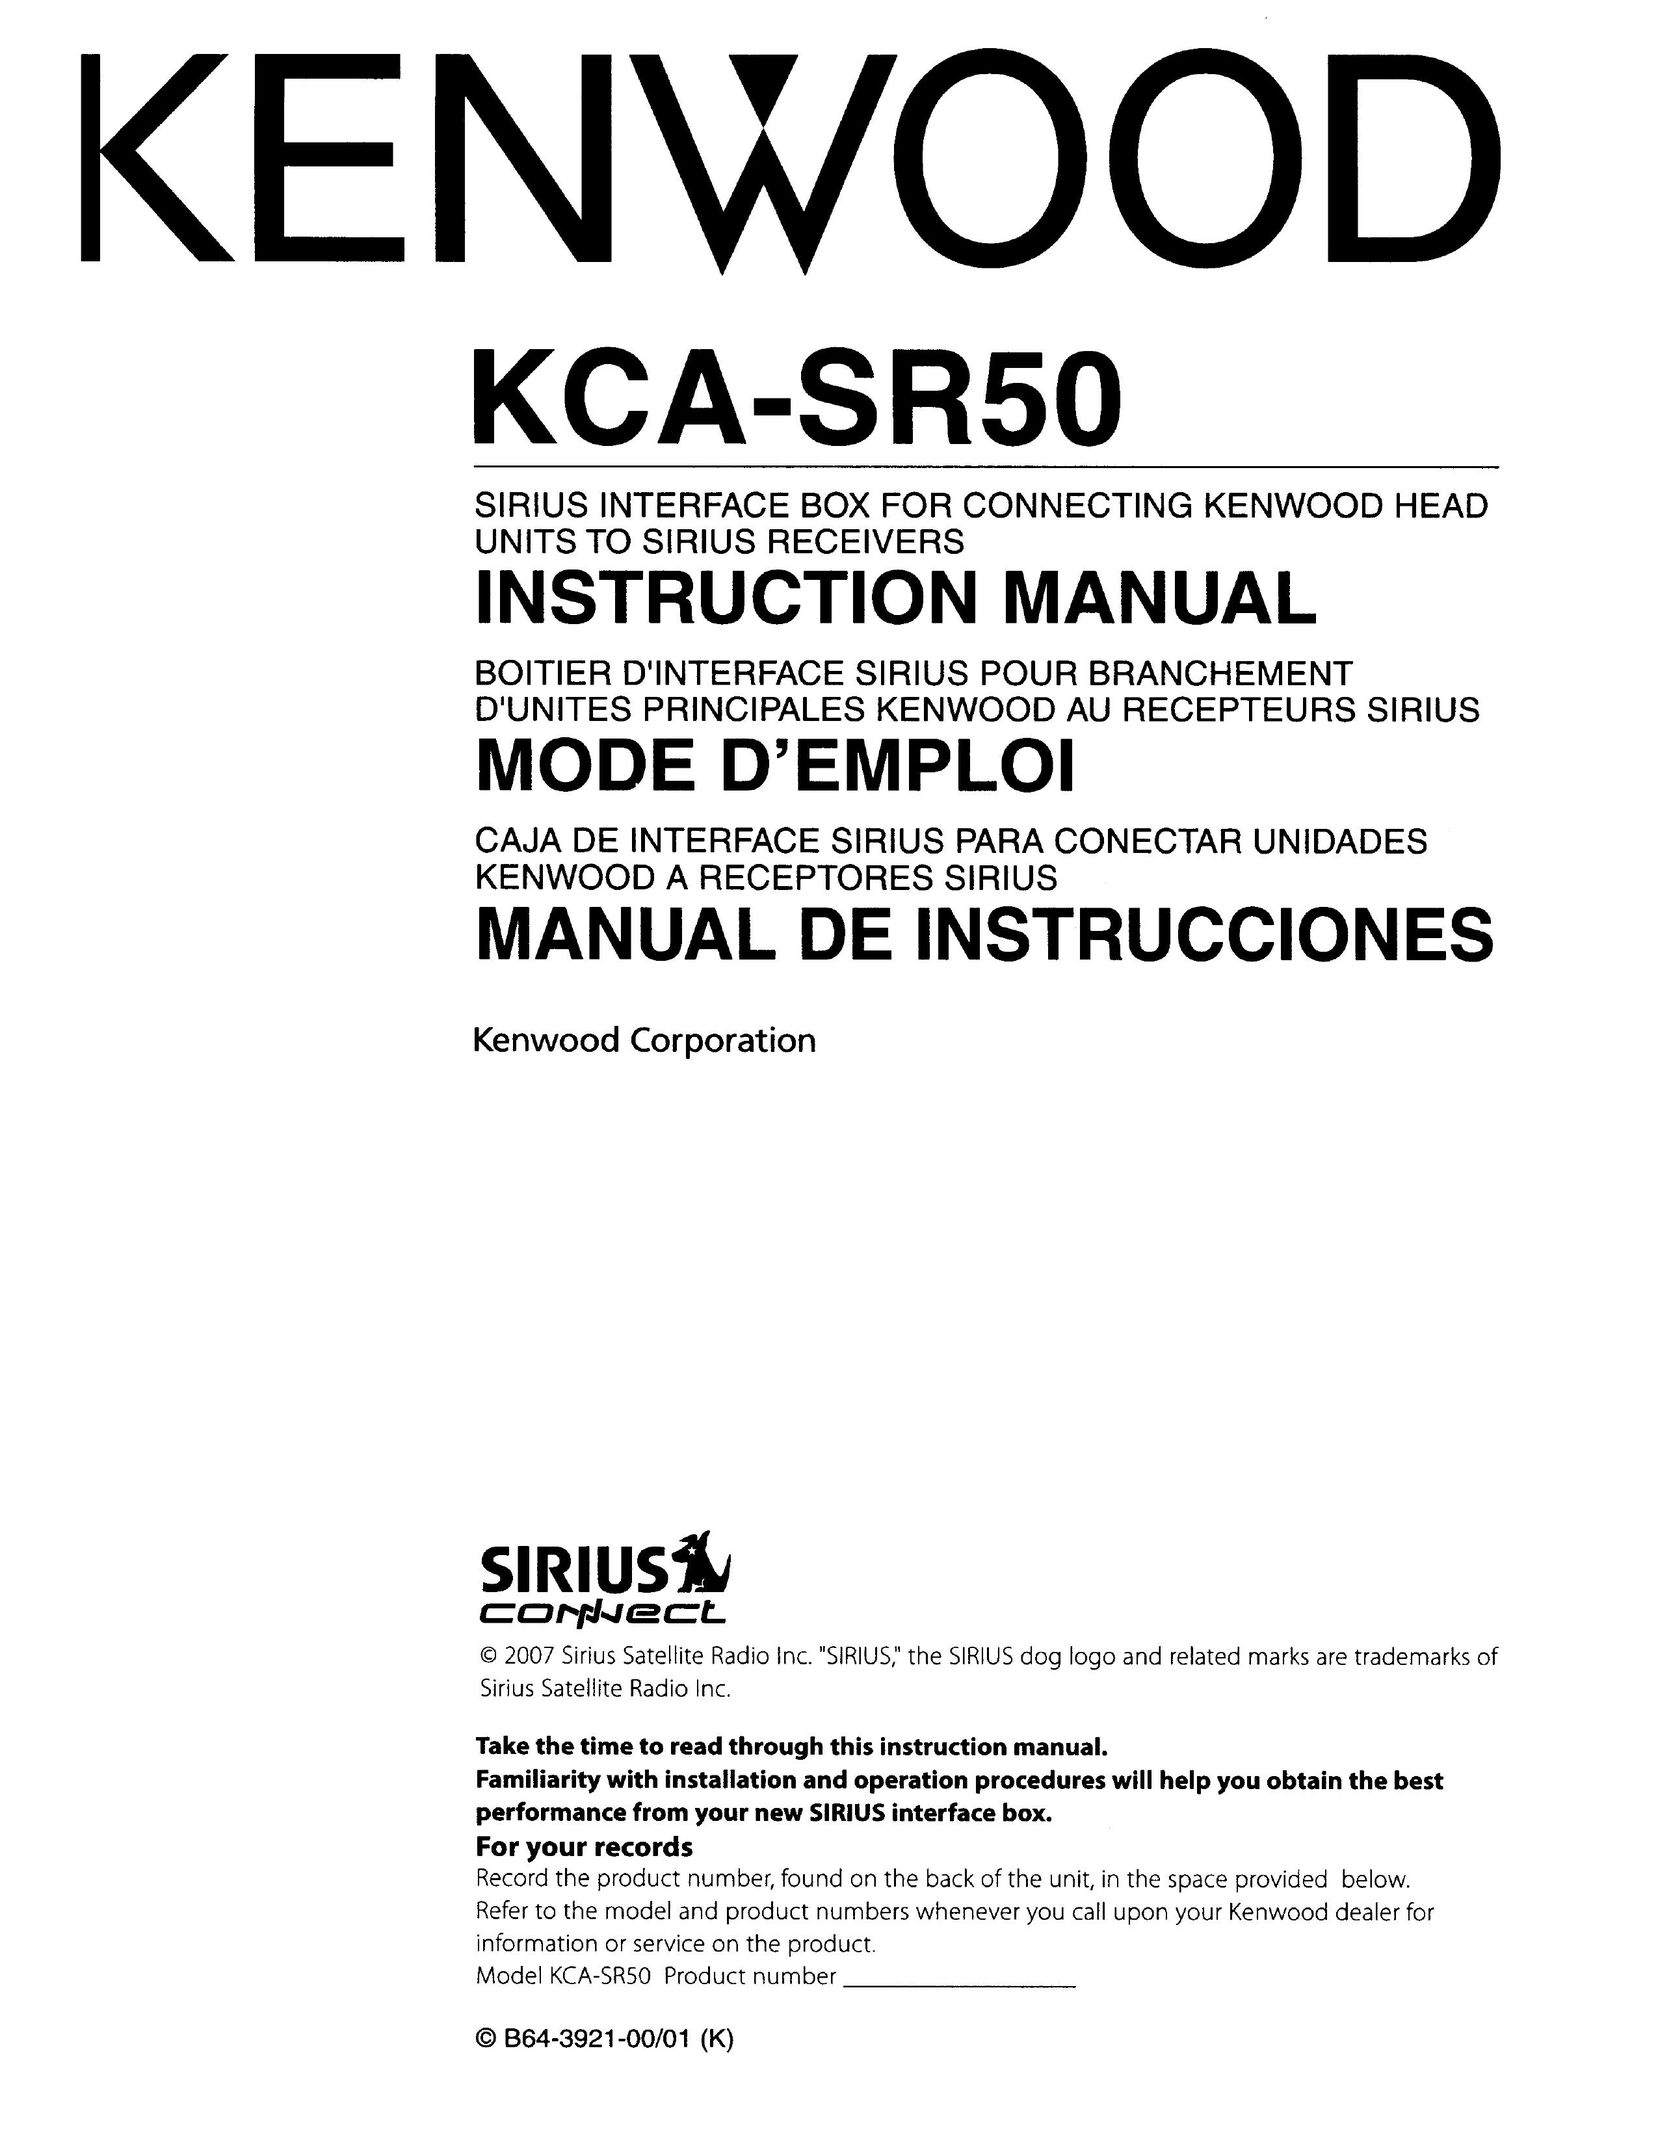 Kenwood KCA-SR50 Satellite Radio User Manual